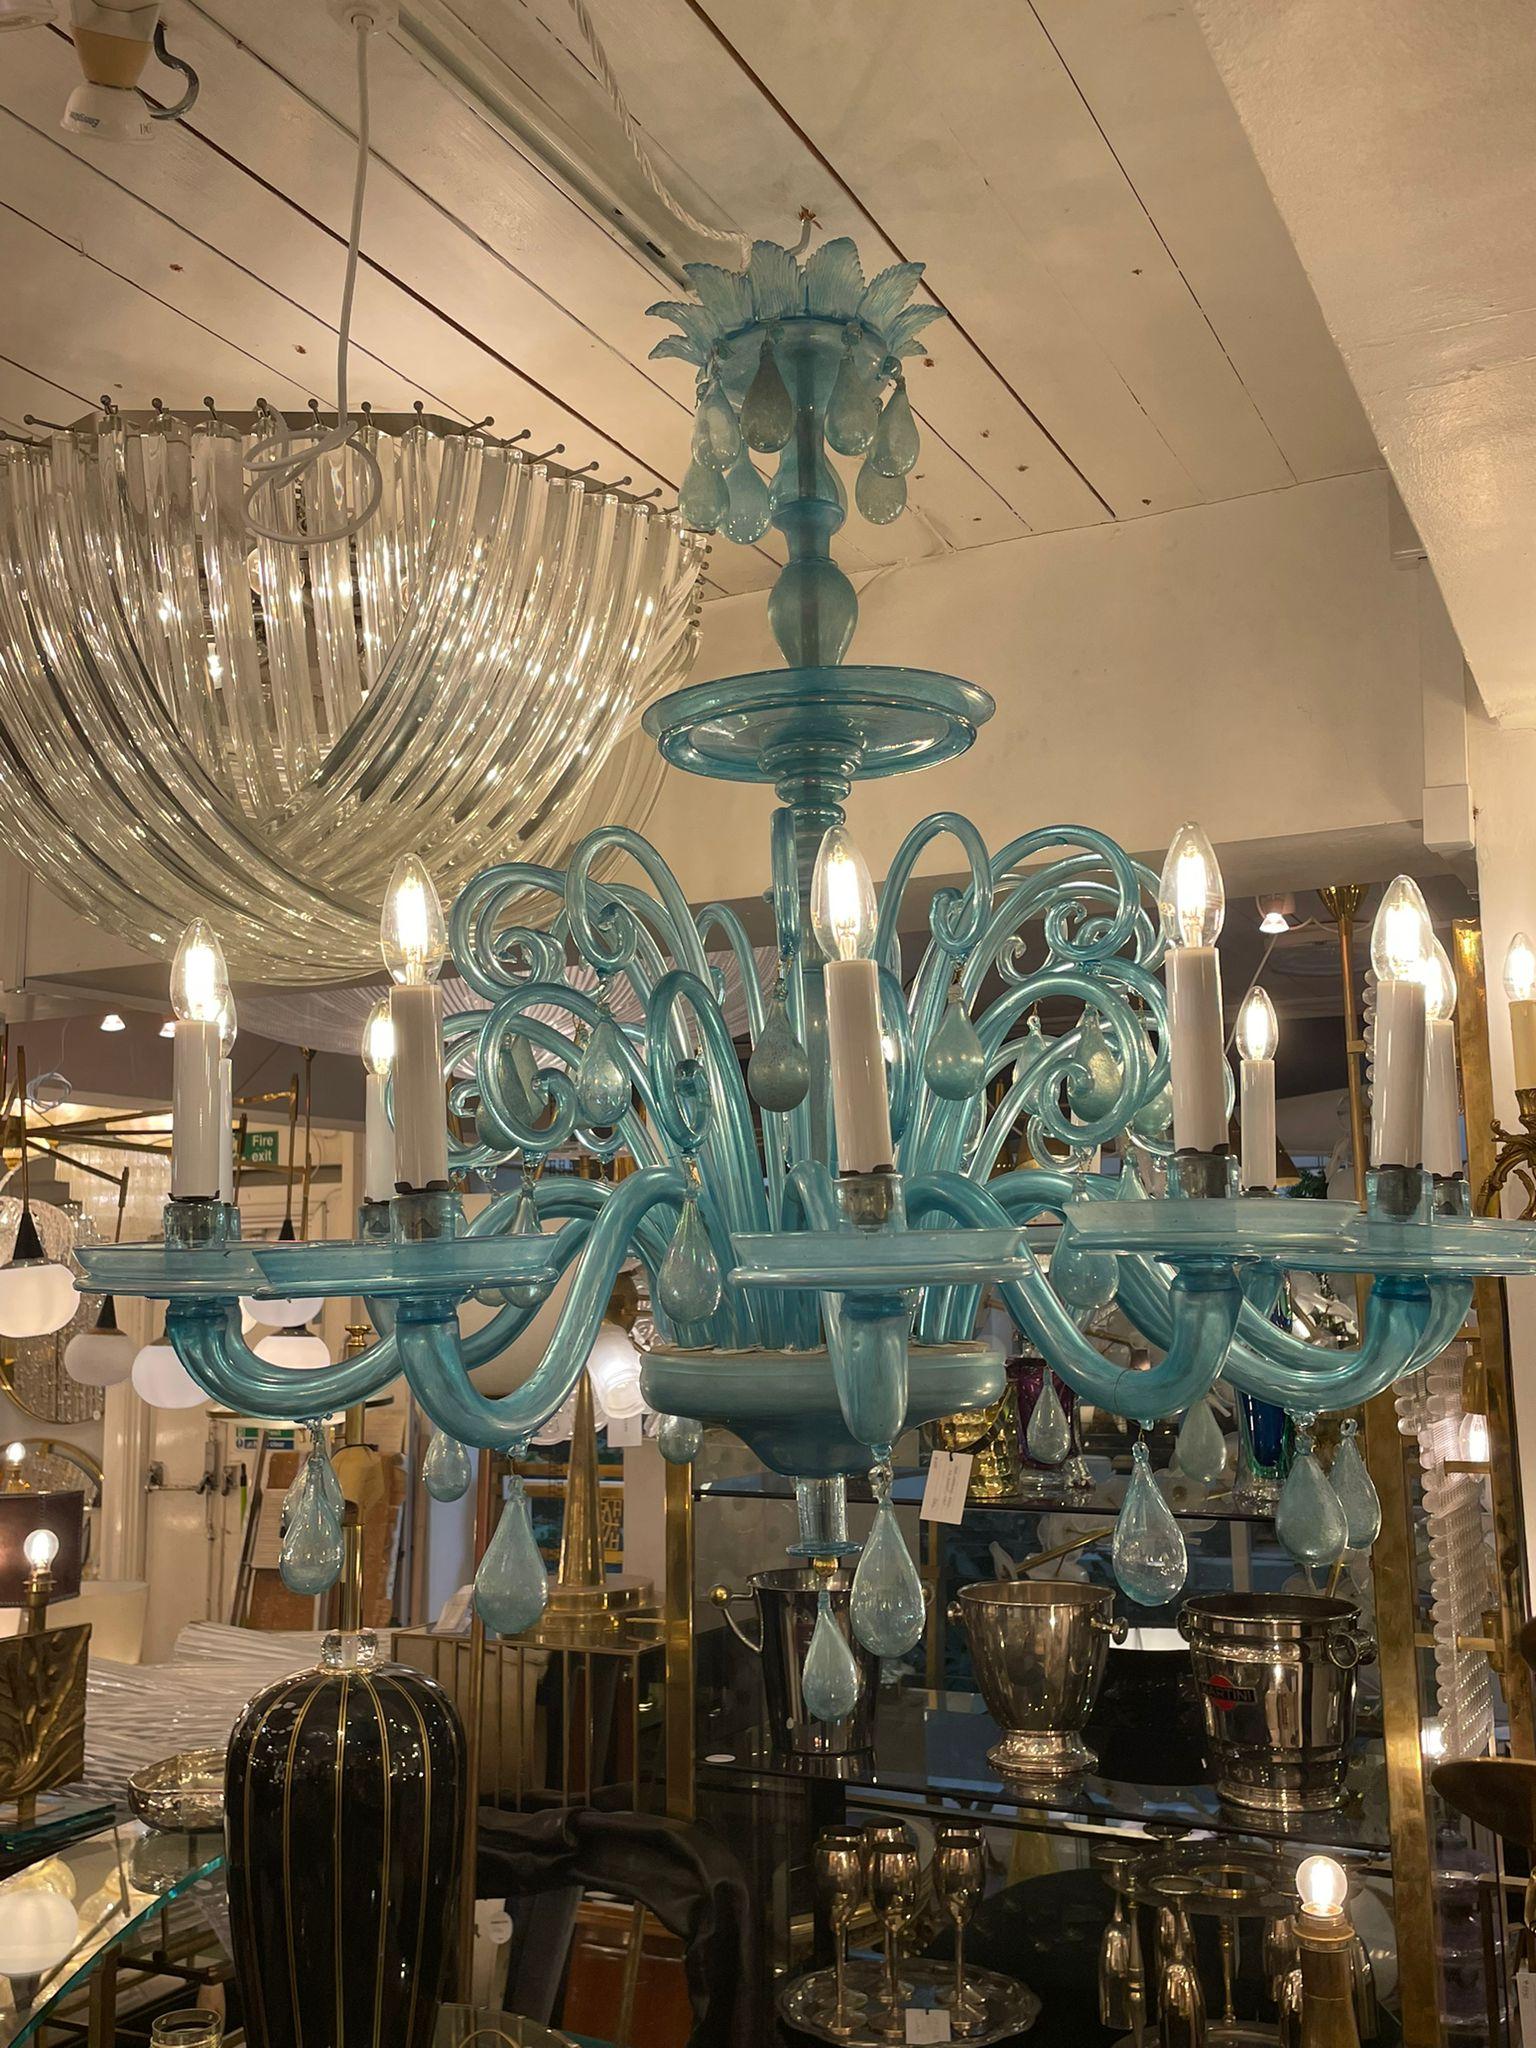 Ce fantastique lustre turquoise en verre de Murano est une pièce d'art de musée exceptionnelle et rare attribuée à M.V.M. Cappellin, vers les années 1920. Il s'agit d'un magnifique lustre entièrement fabriqué à la main en verre de Murano soufflé à